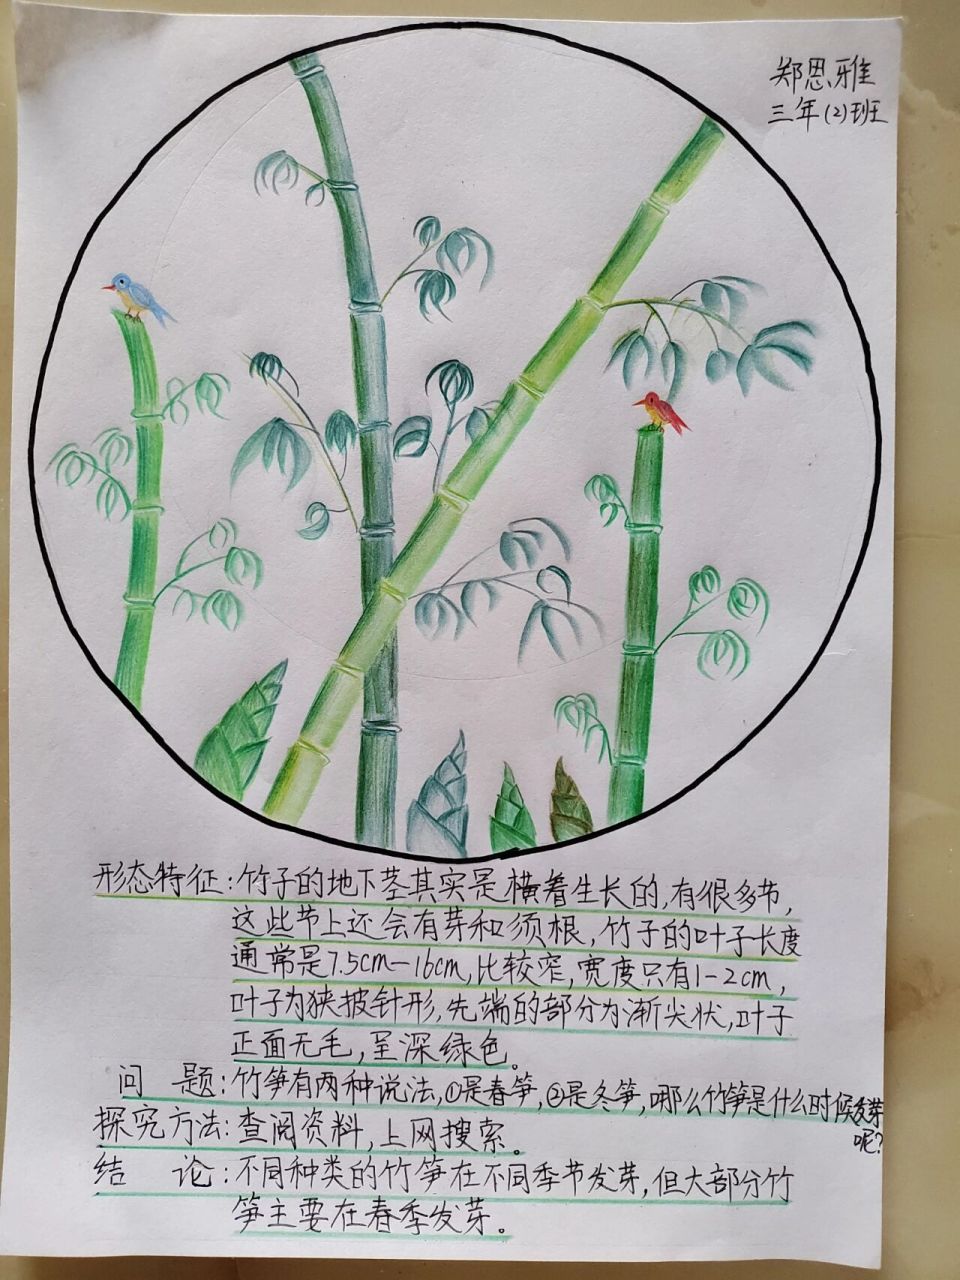 科学手抄报 竹子的形态特征,提出问题,探究方法和结论